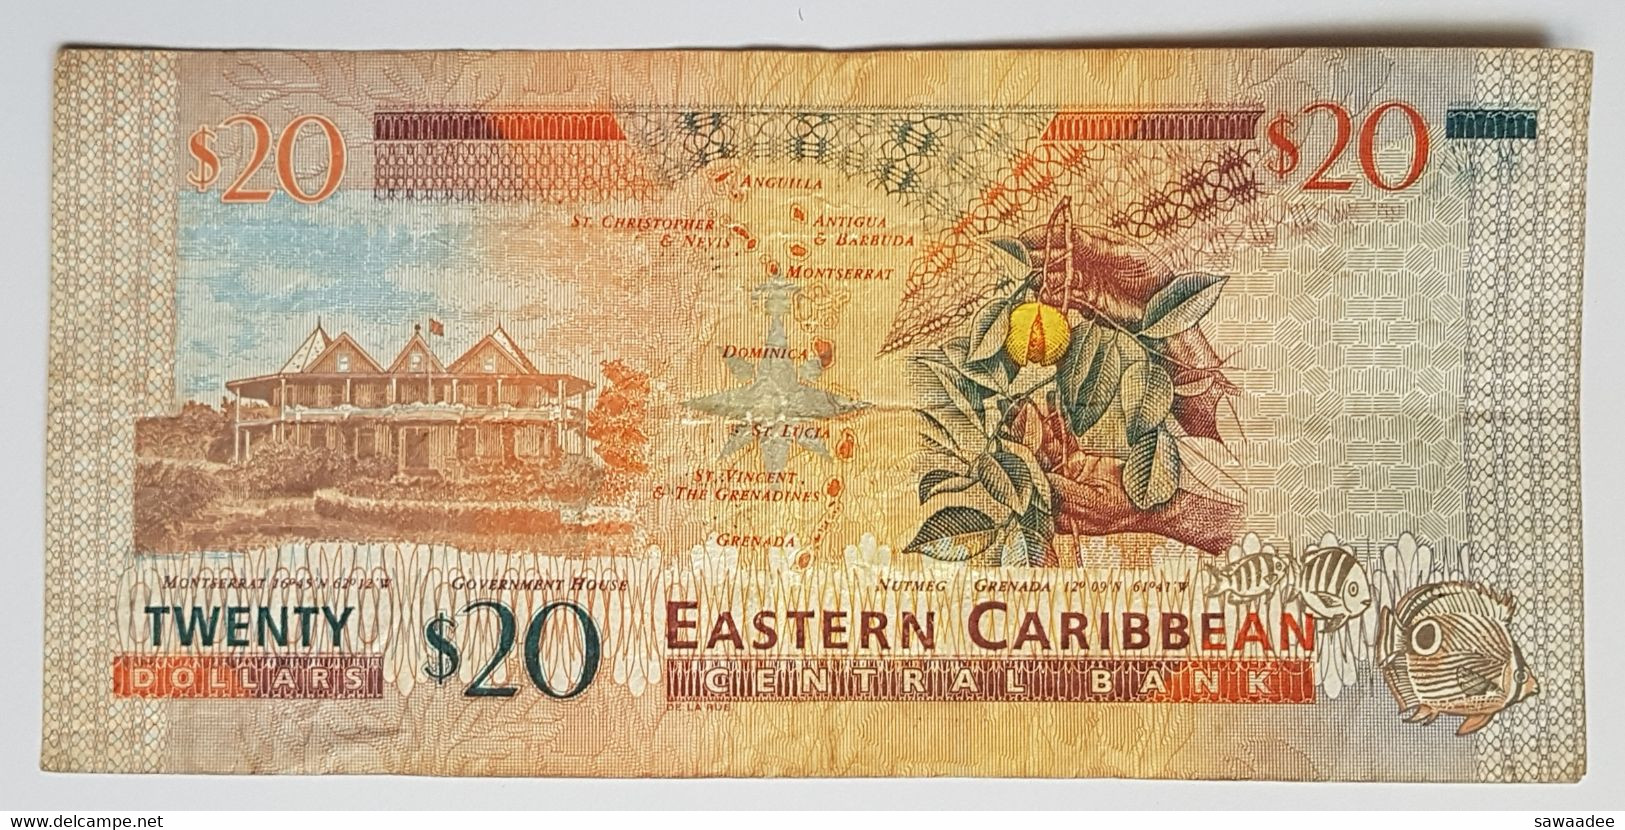 BILLET DE BANQUE - CARAÏBES ORIENTALES - ILE DE STE LUCIE - P.20 L - 20 $ - 1993 - ELISABETH II - TORTUE - FRUIT - Caribes Orientales